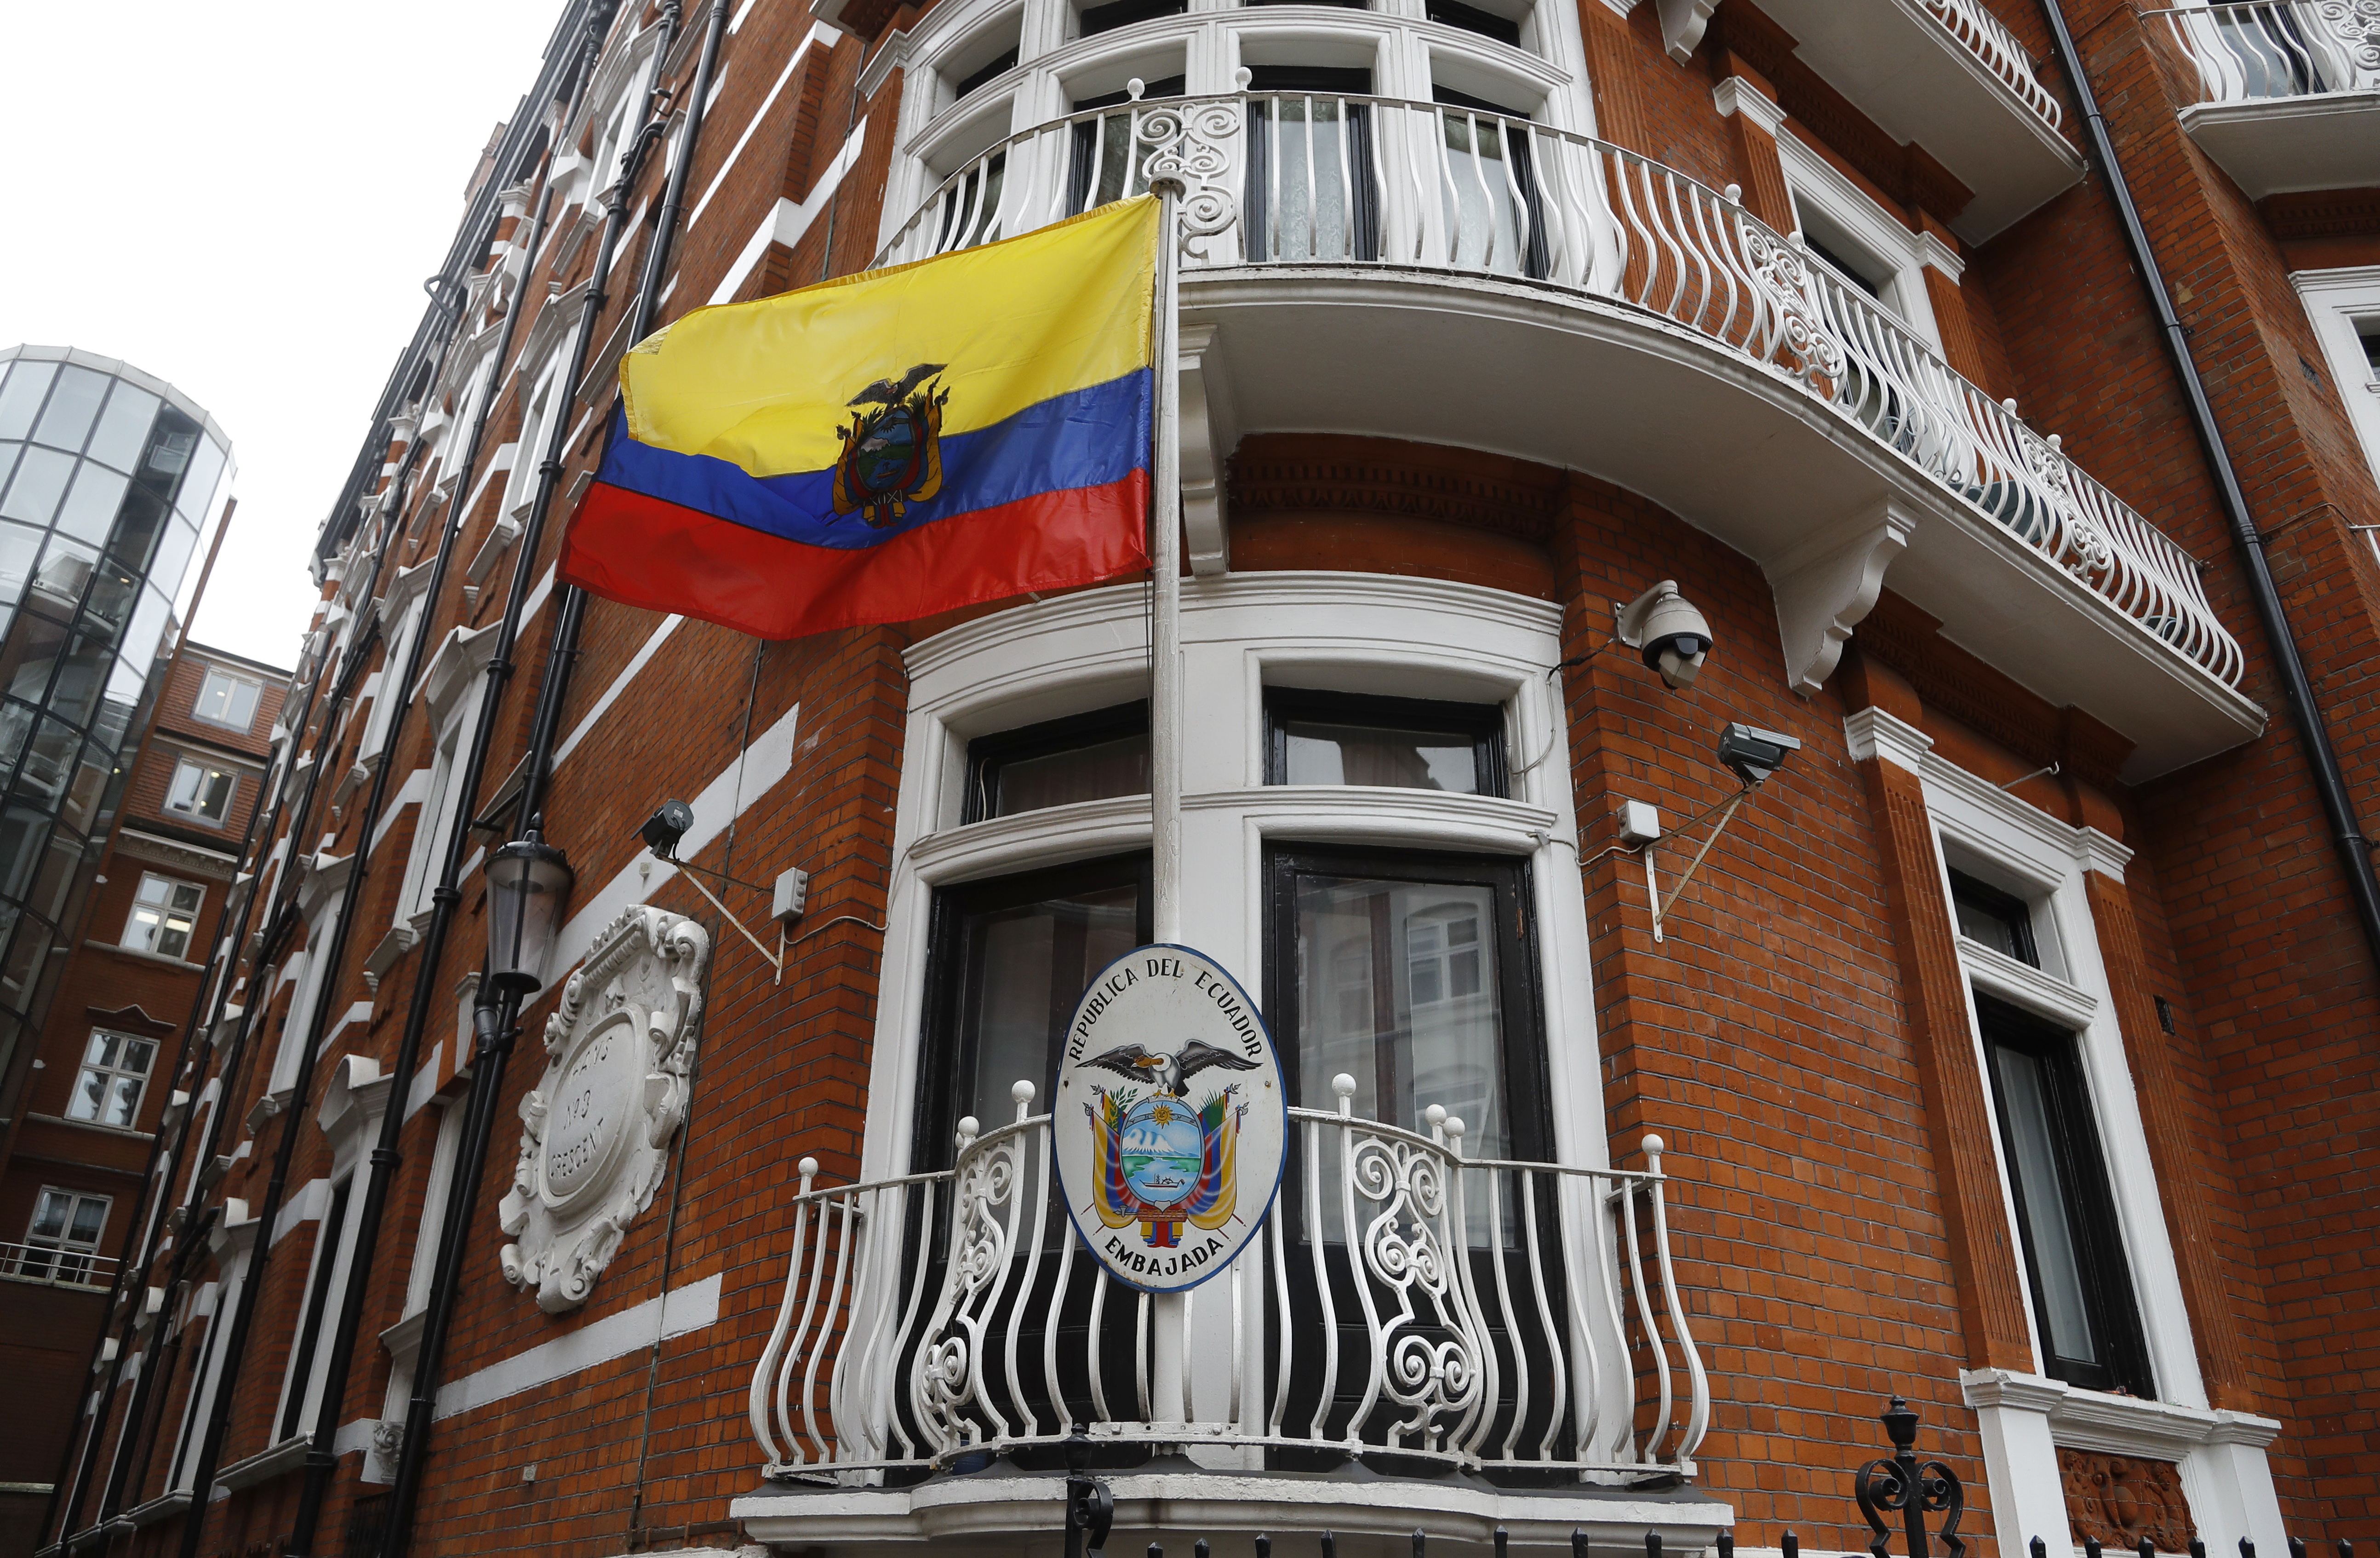 Посолството на Еквадор в Лондон, в което се намира Джулиан Асандж от 2012 година